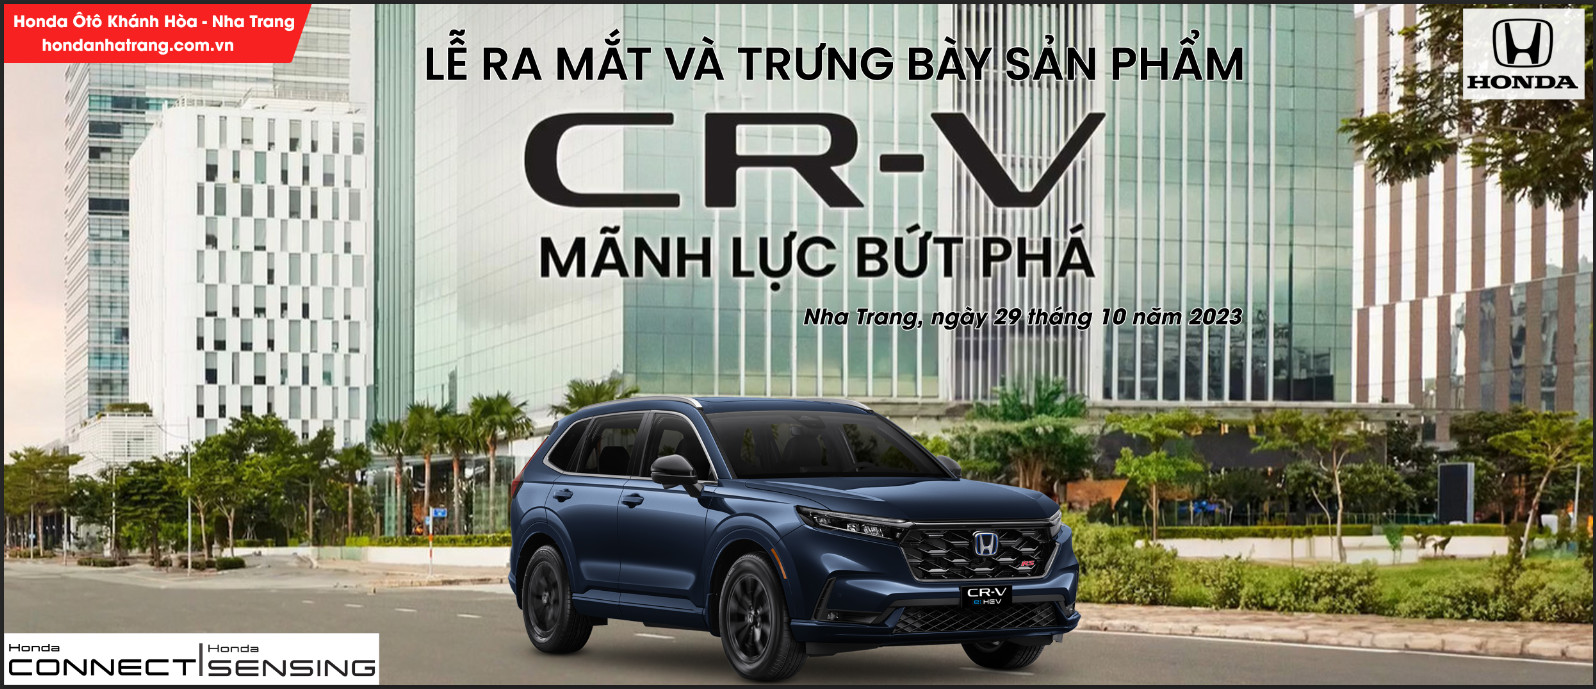 Lễ ra mắt và trưng bày Honda CR-V 2023 tại Khánh Hòa